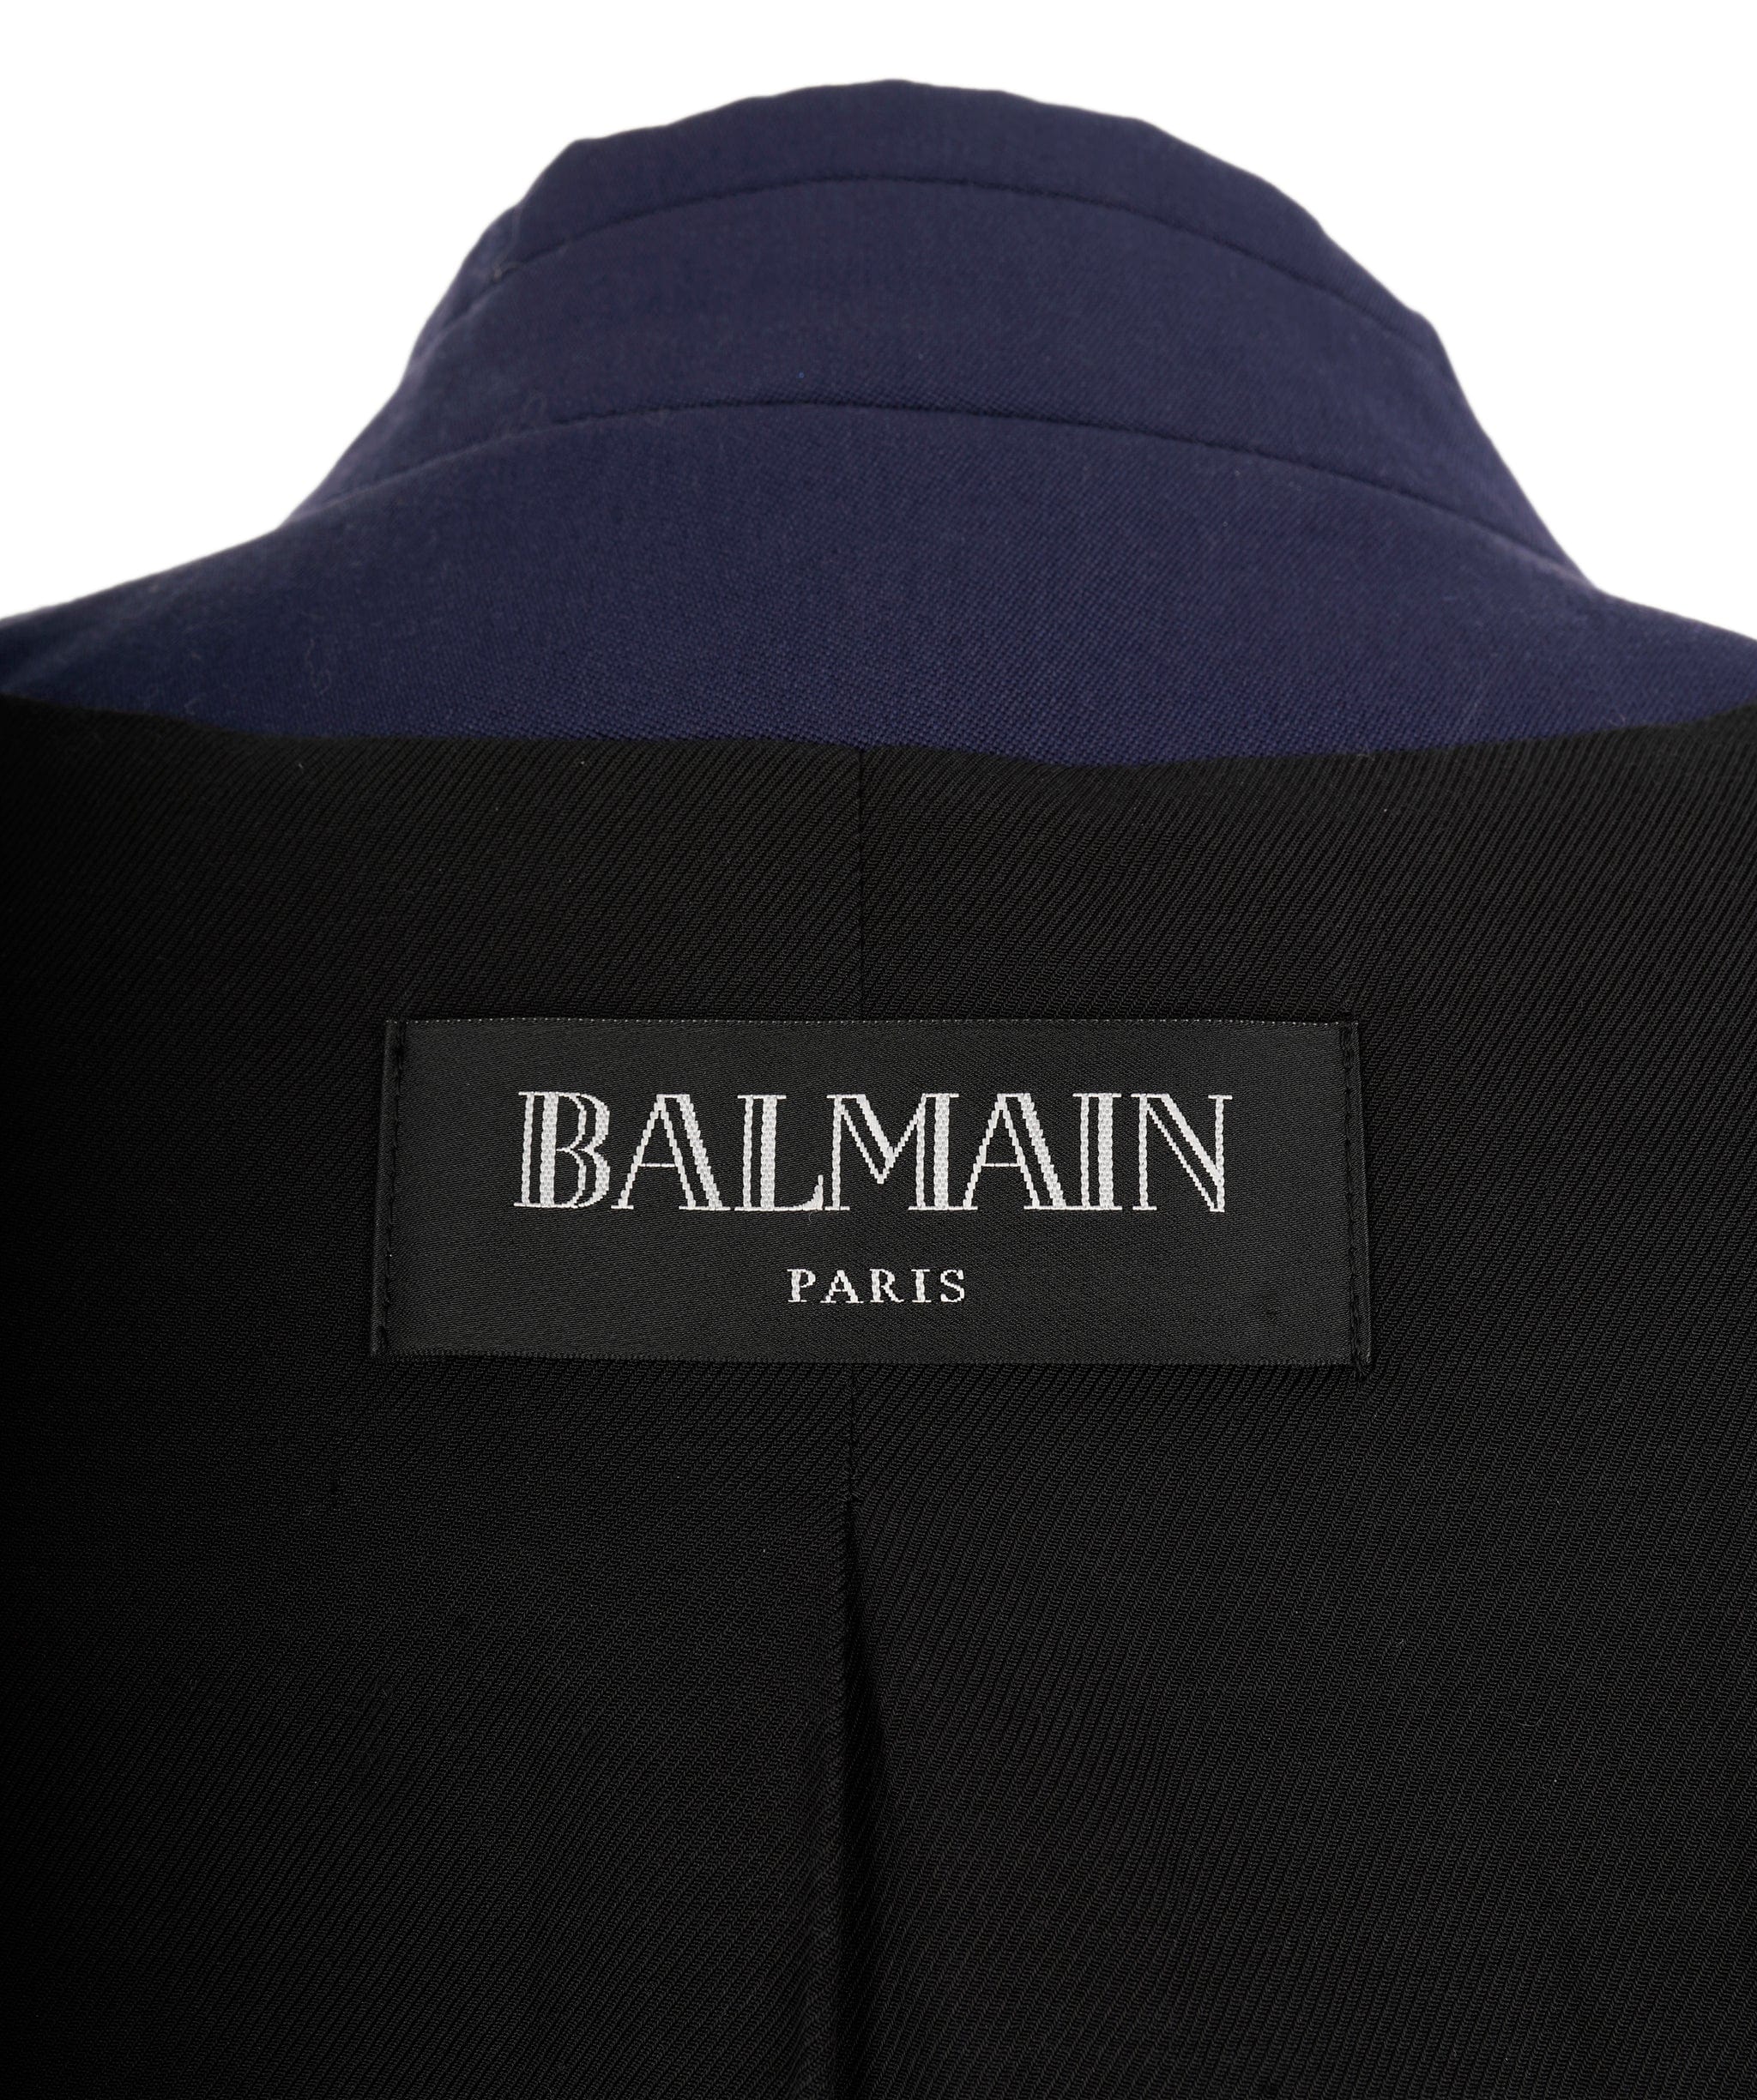 Hermès Balmain blazer 42 ALC0269